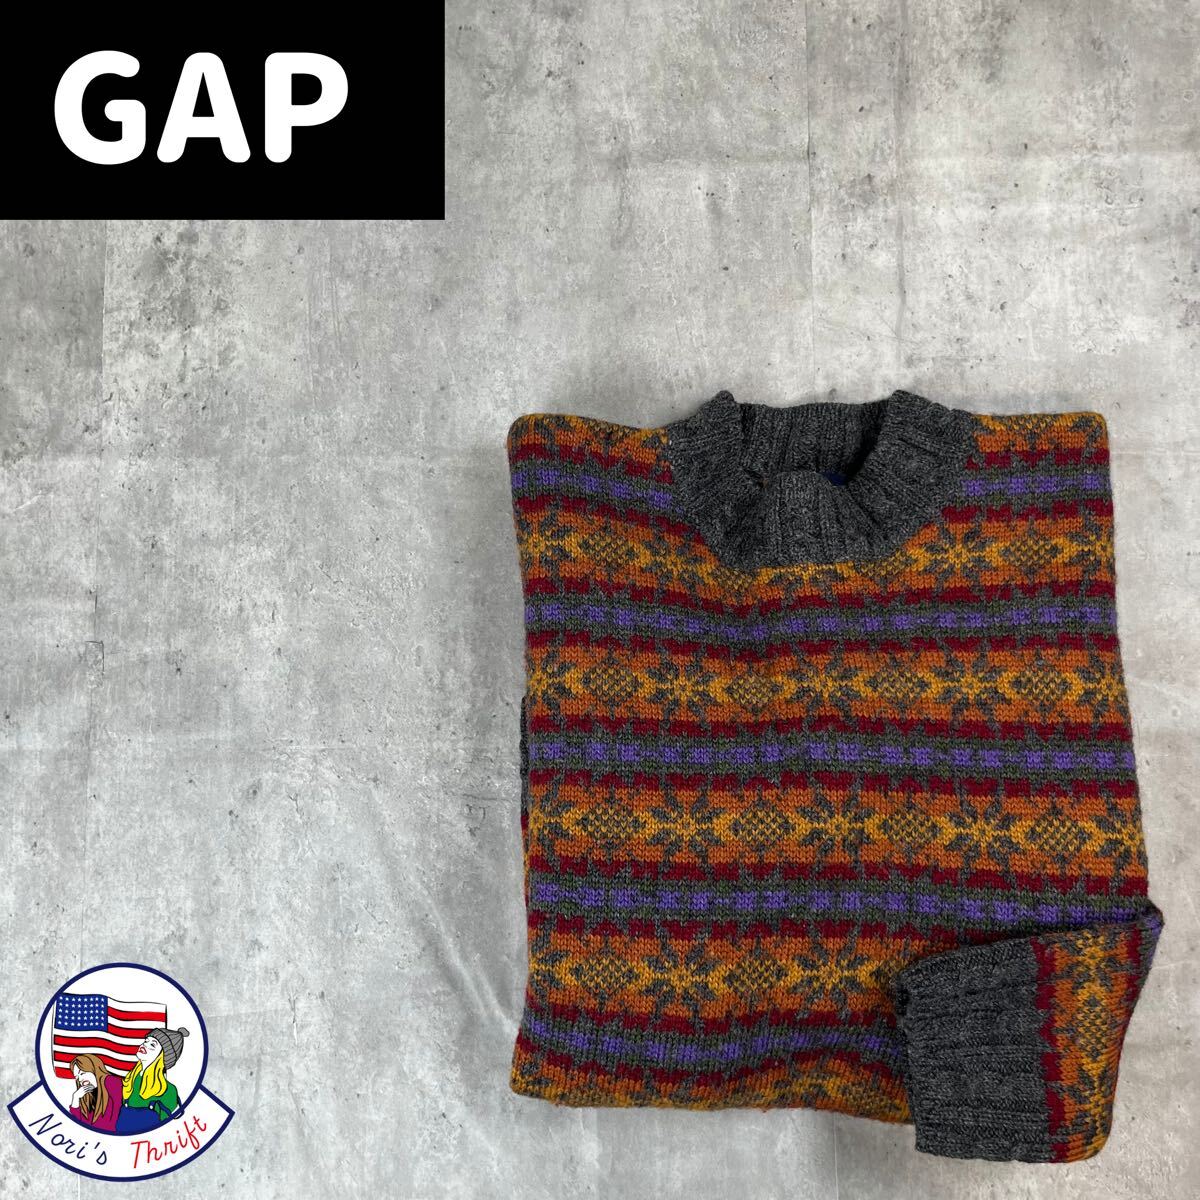  Old Gap . какой . шерсть вязаный свитер 90s 1600